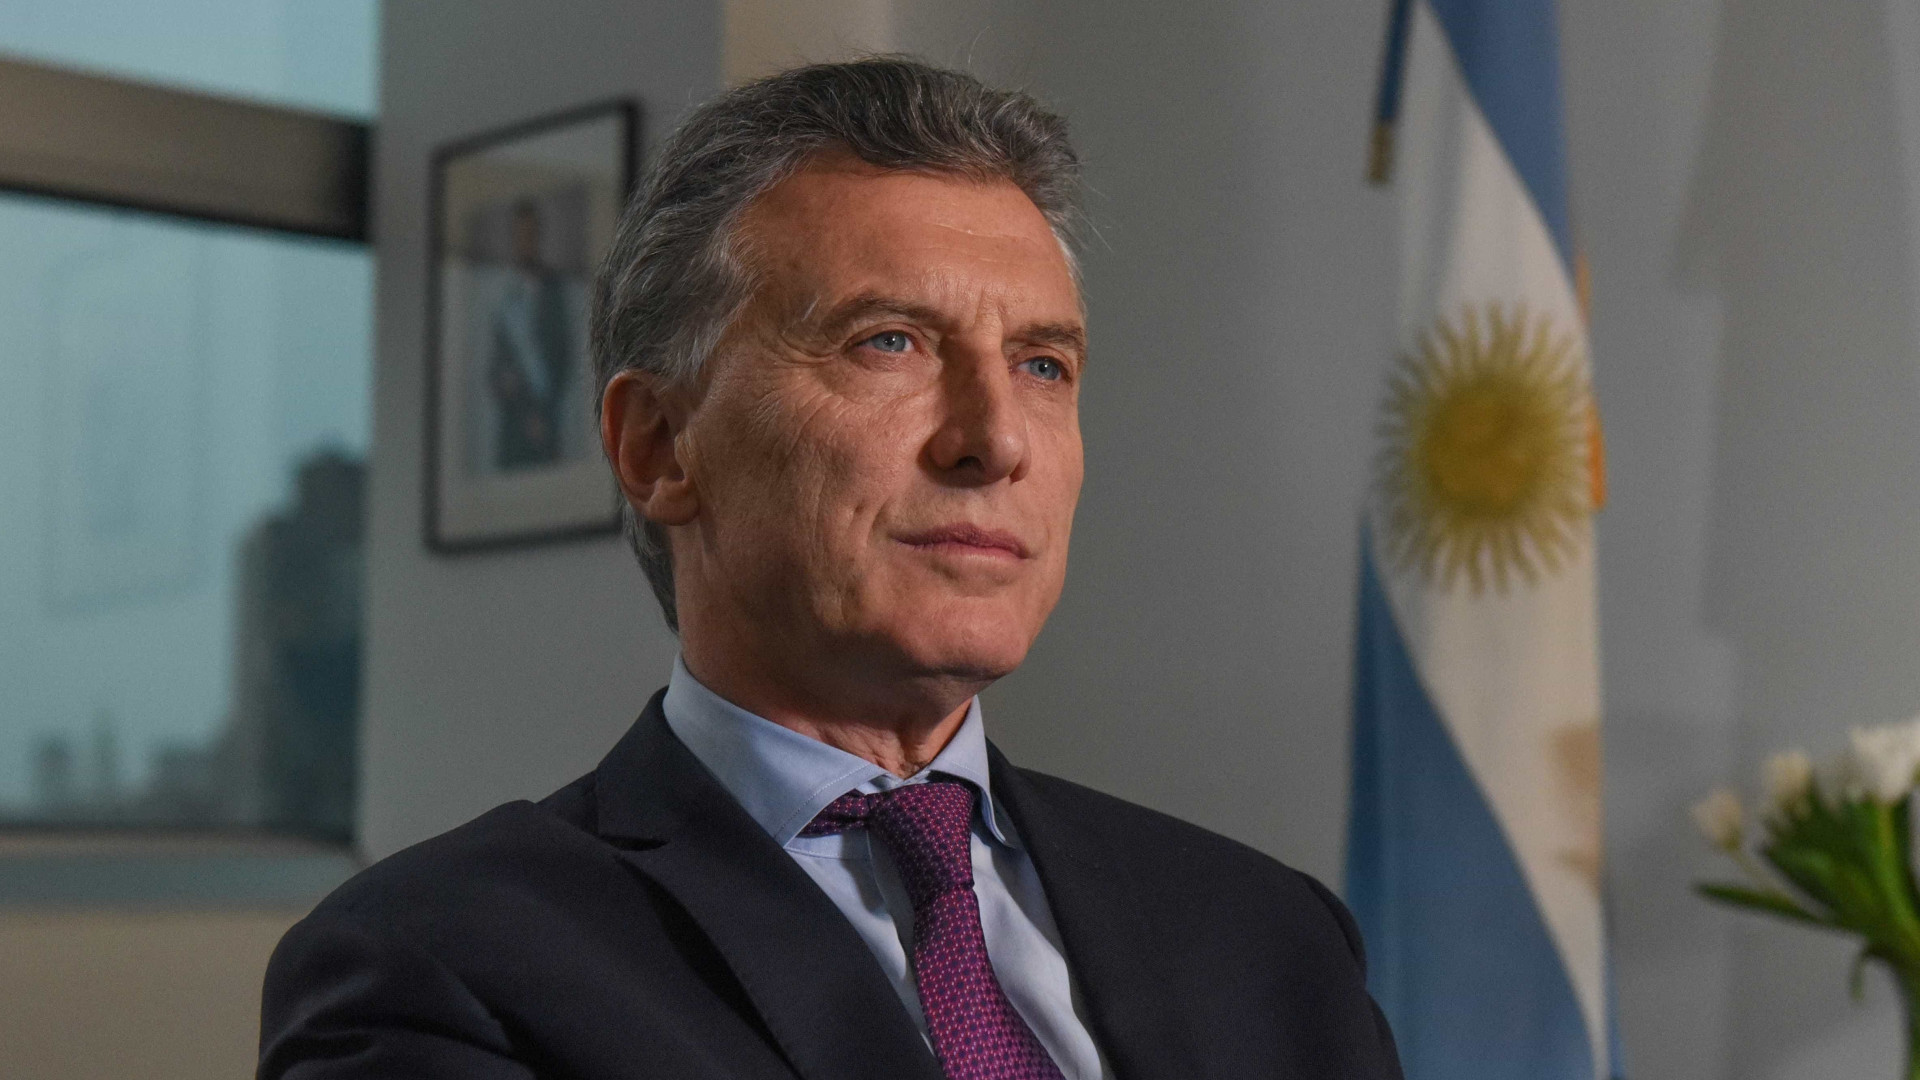 Macri deixa Argentina com legado econômico sofrível